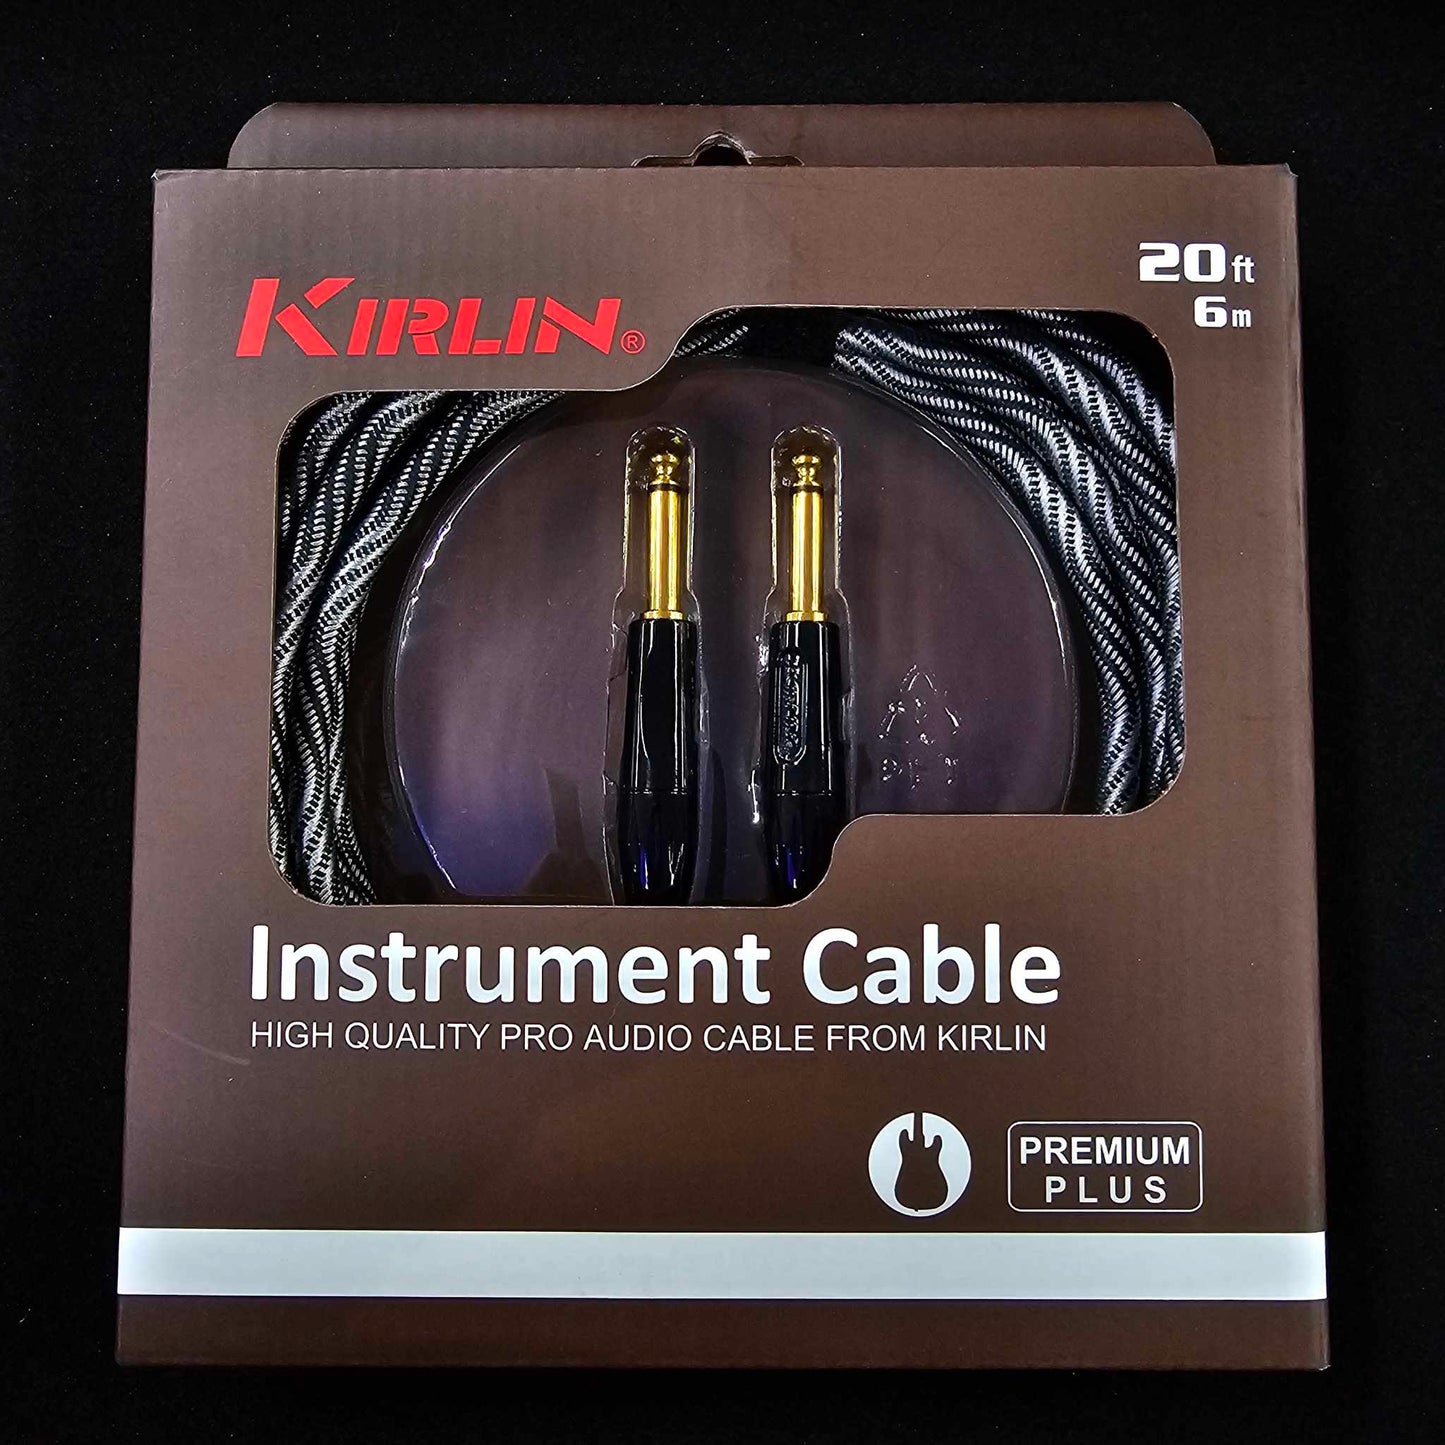 Kirlin 20ft Premium Plus Instrument Cable